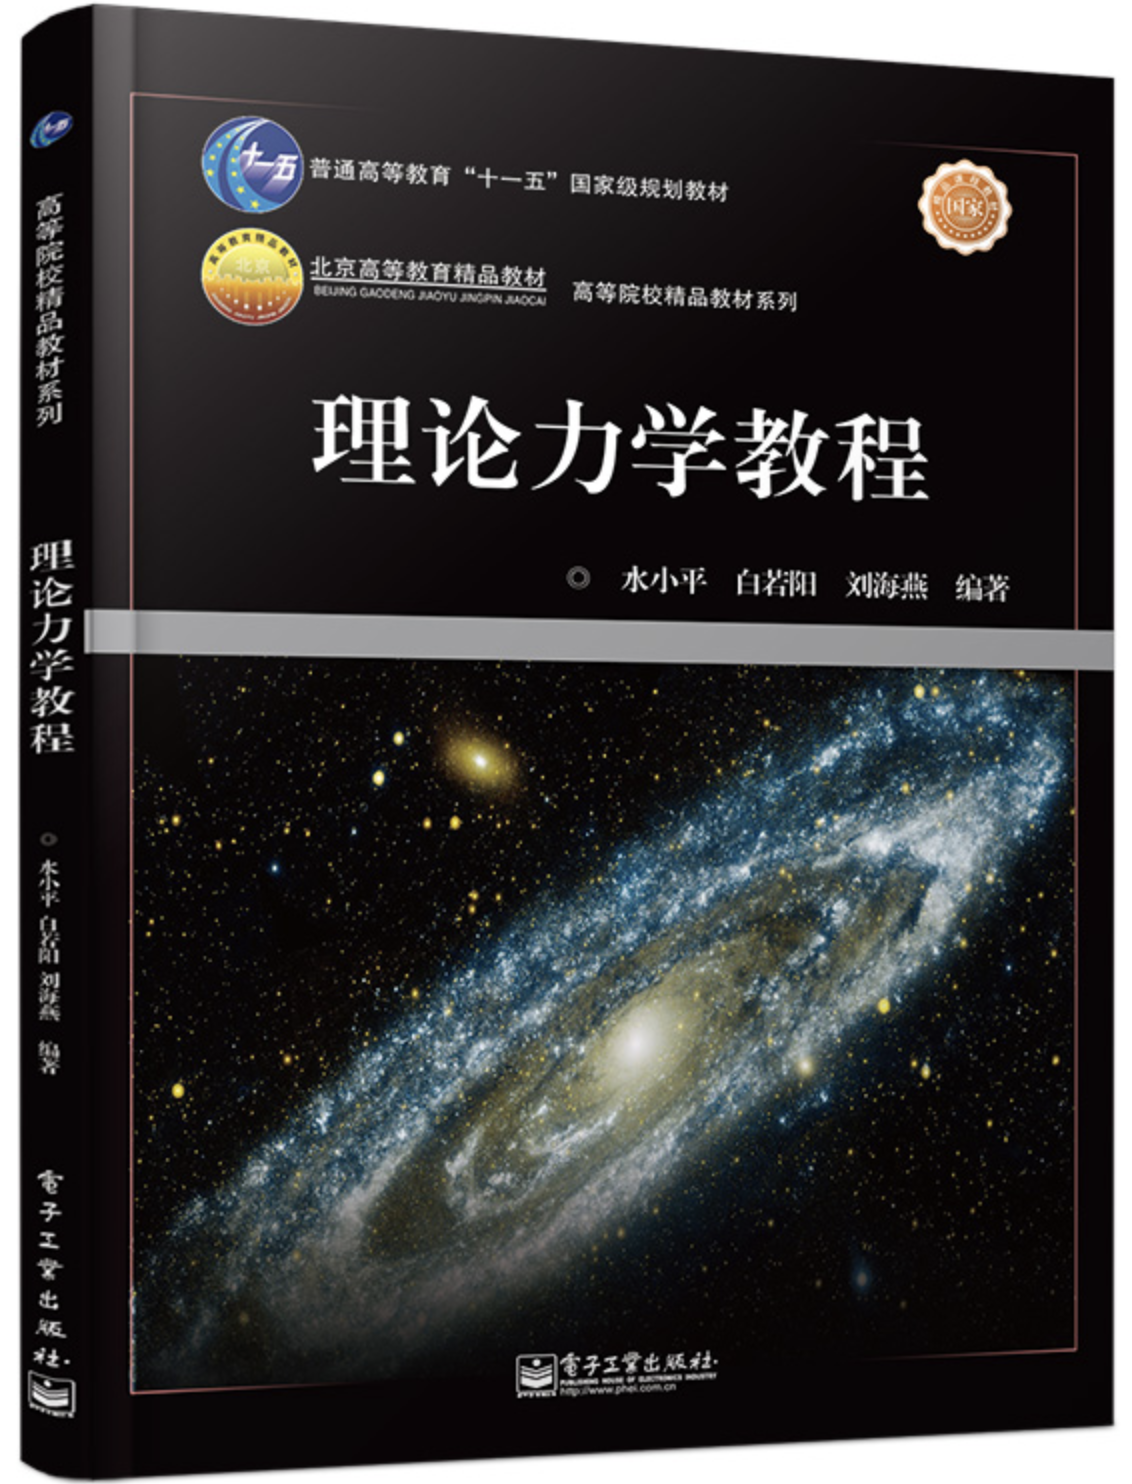 理論力學教程(2013年9月電子工業出版社出版的圖書)